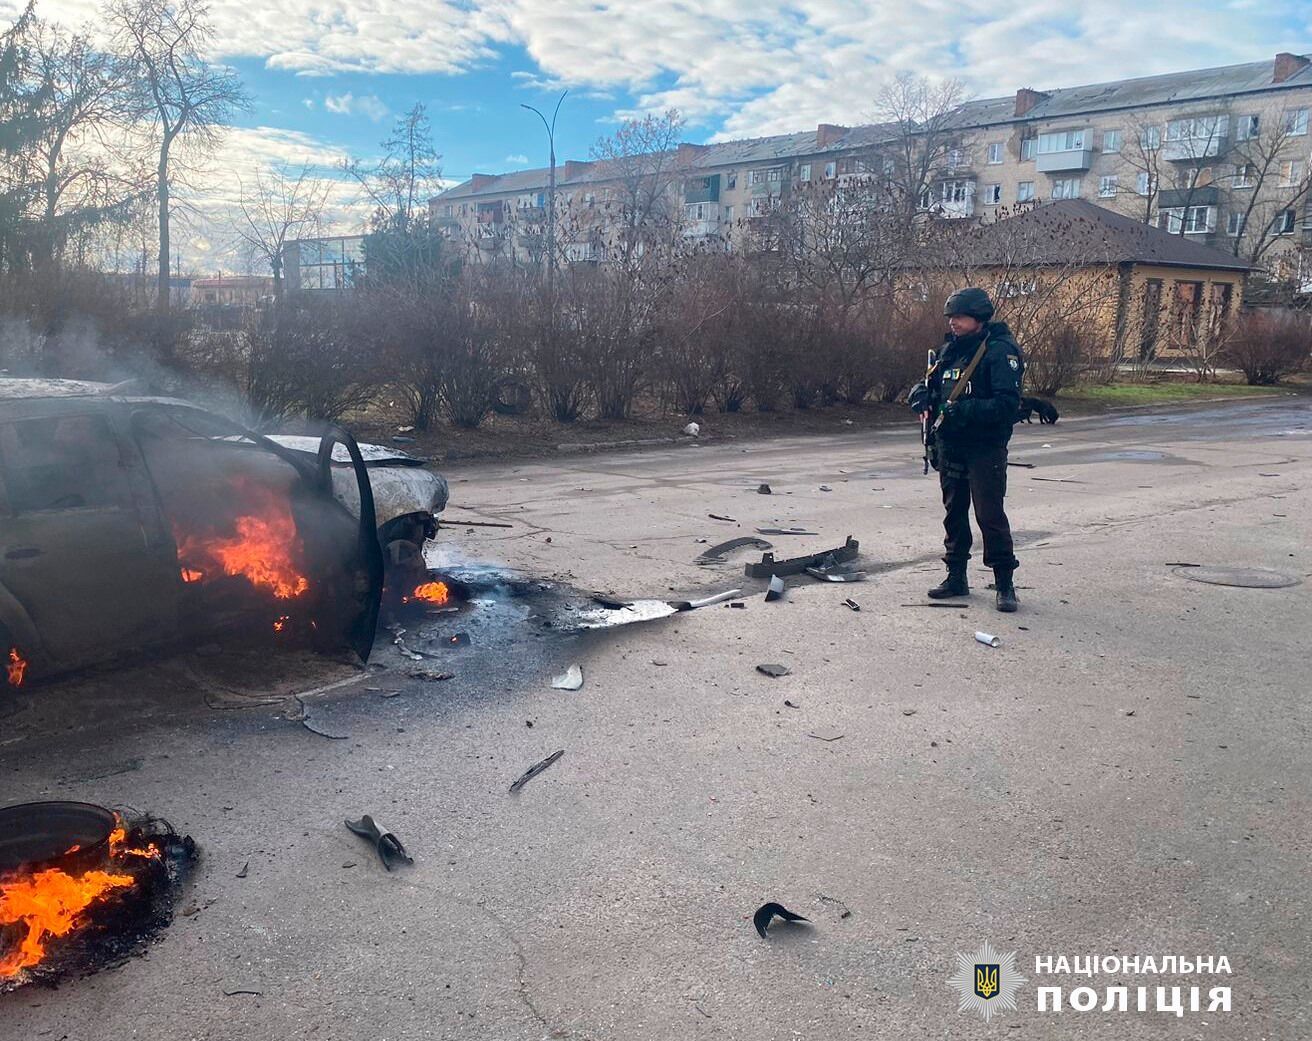 Оккупанты ударили по Волчанску на Харьковщине, загорелось авто: есть погибшая и пострадавшая. Фото